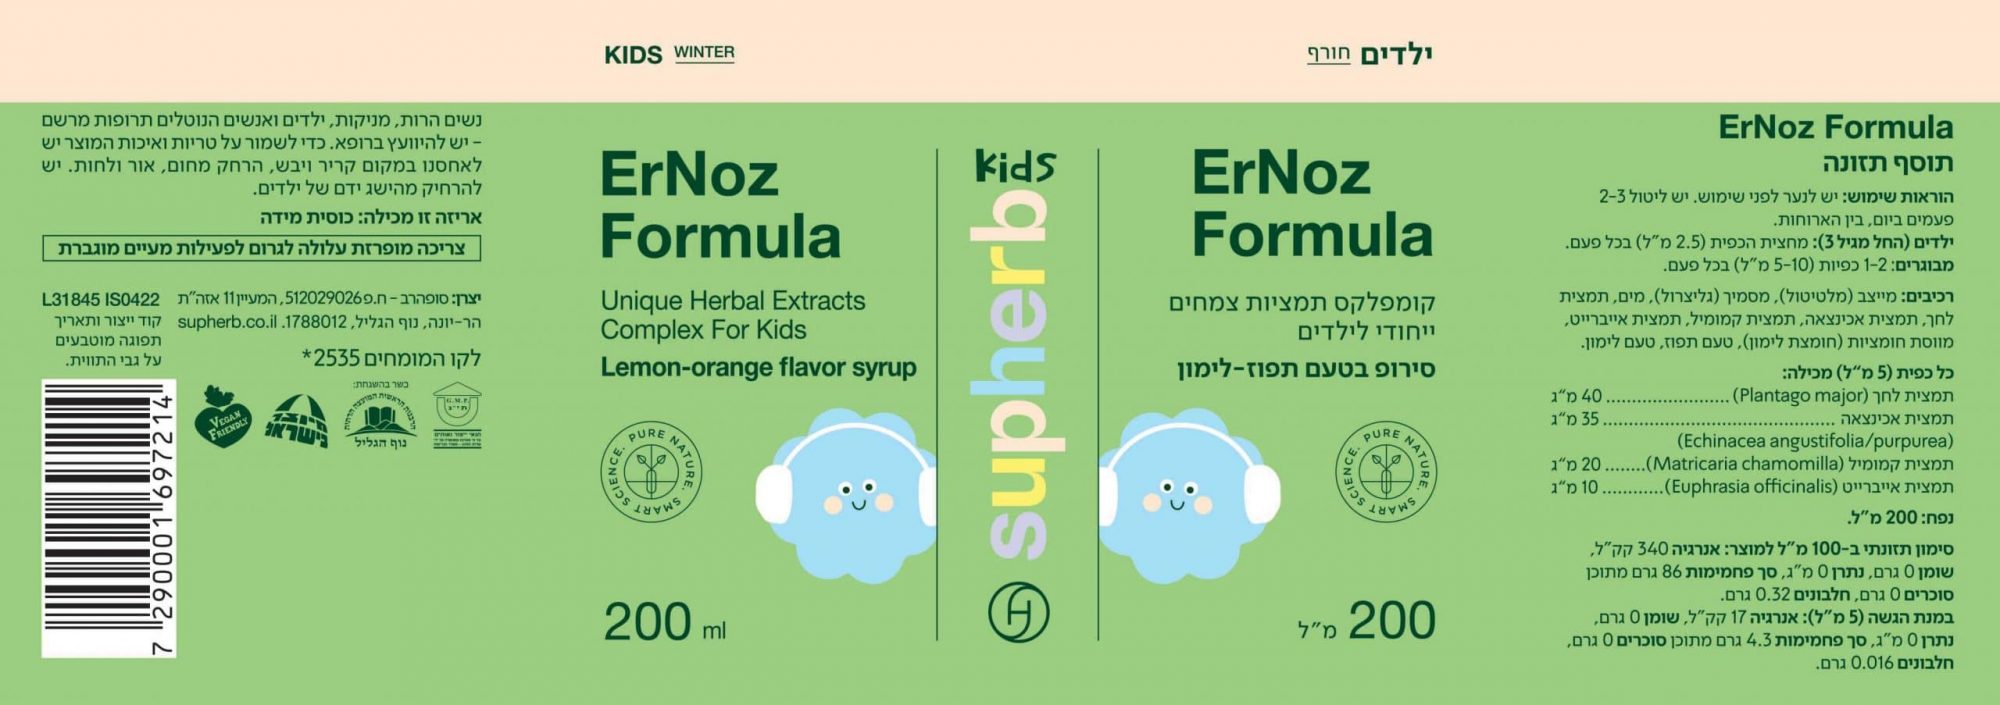 ErNoz Formula | איר נוז פורמולה